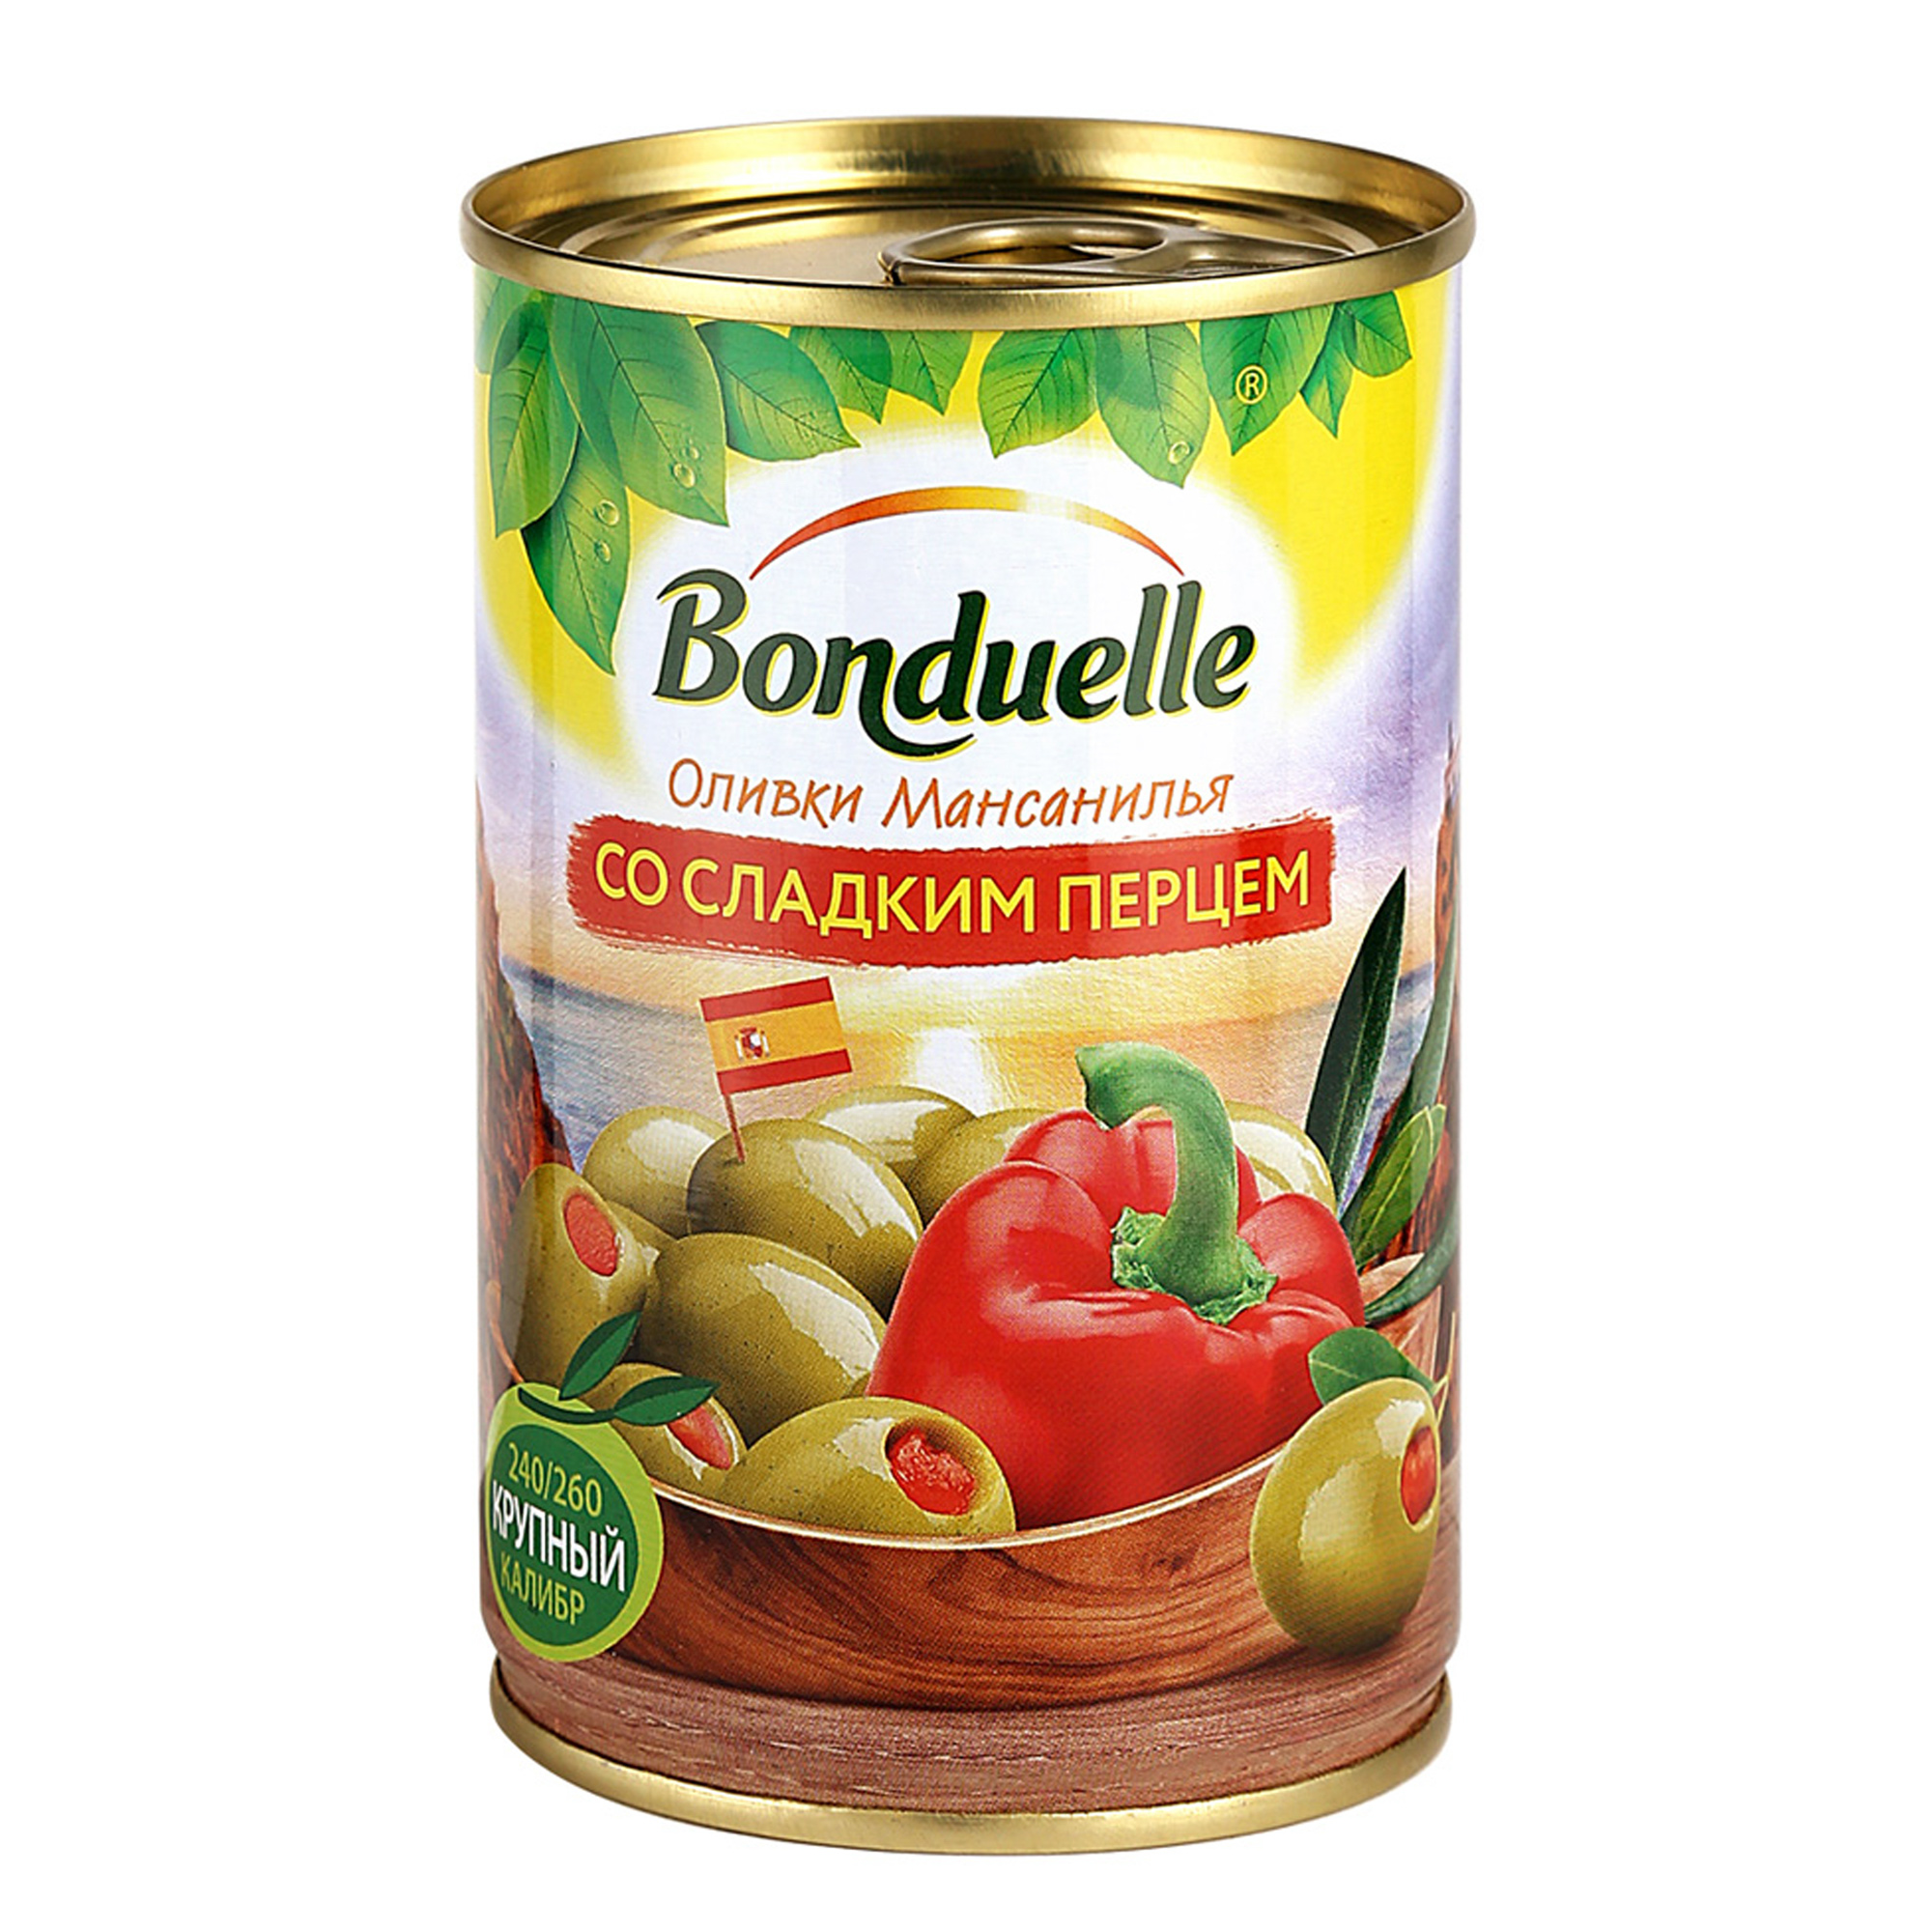 Оливки Bonduelle со сладким перцем 314 г оливки зеленые ece ломаные 300 г